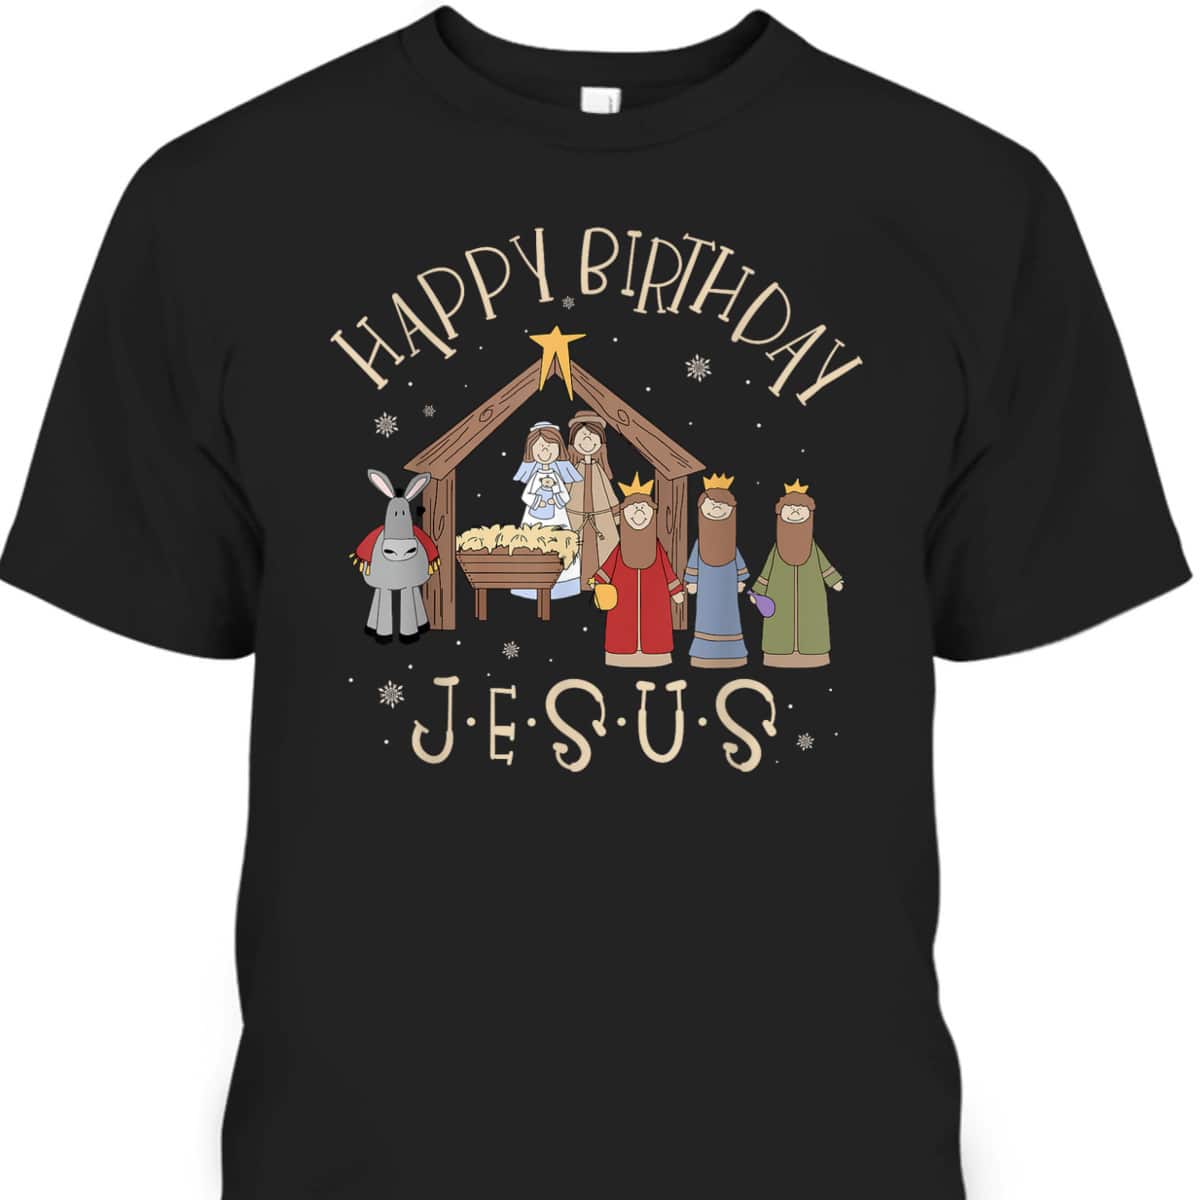 Nativity Happy Birthday Jesus Christmas Nativity Christian T-Shirt